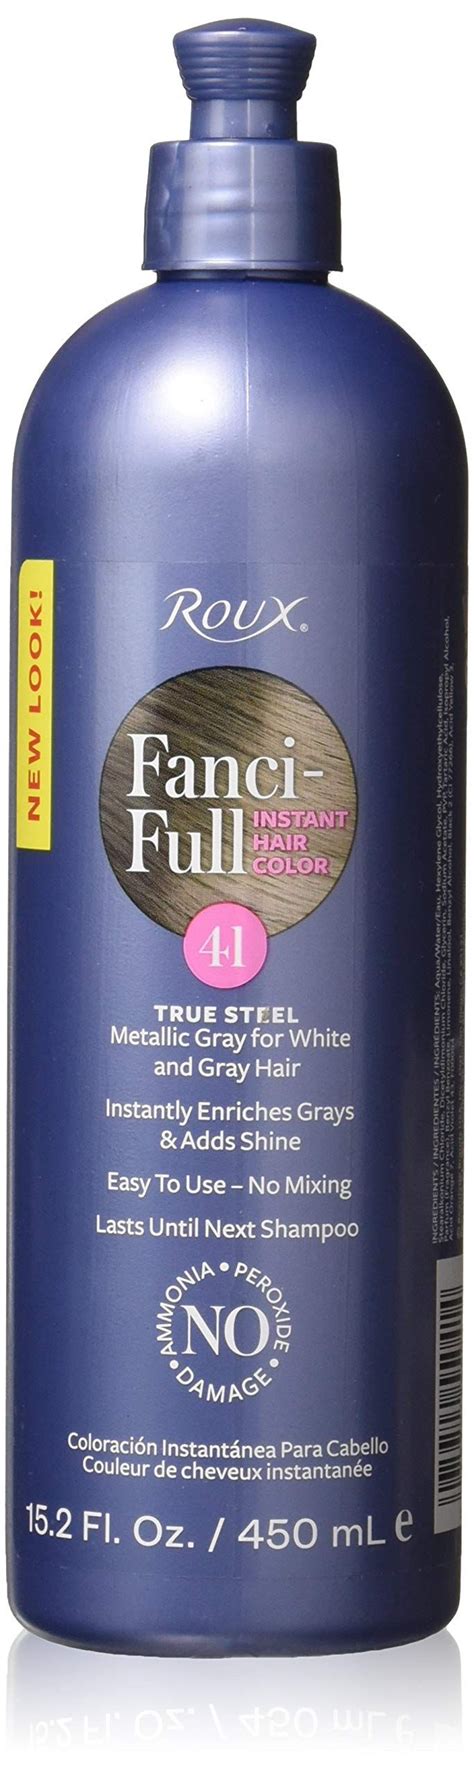 Roux Fanci Full Rinse Steel Fluid Roux Fanci Full Shampoo For Gray